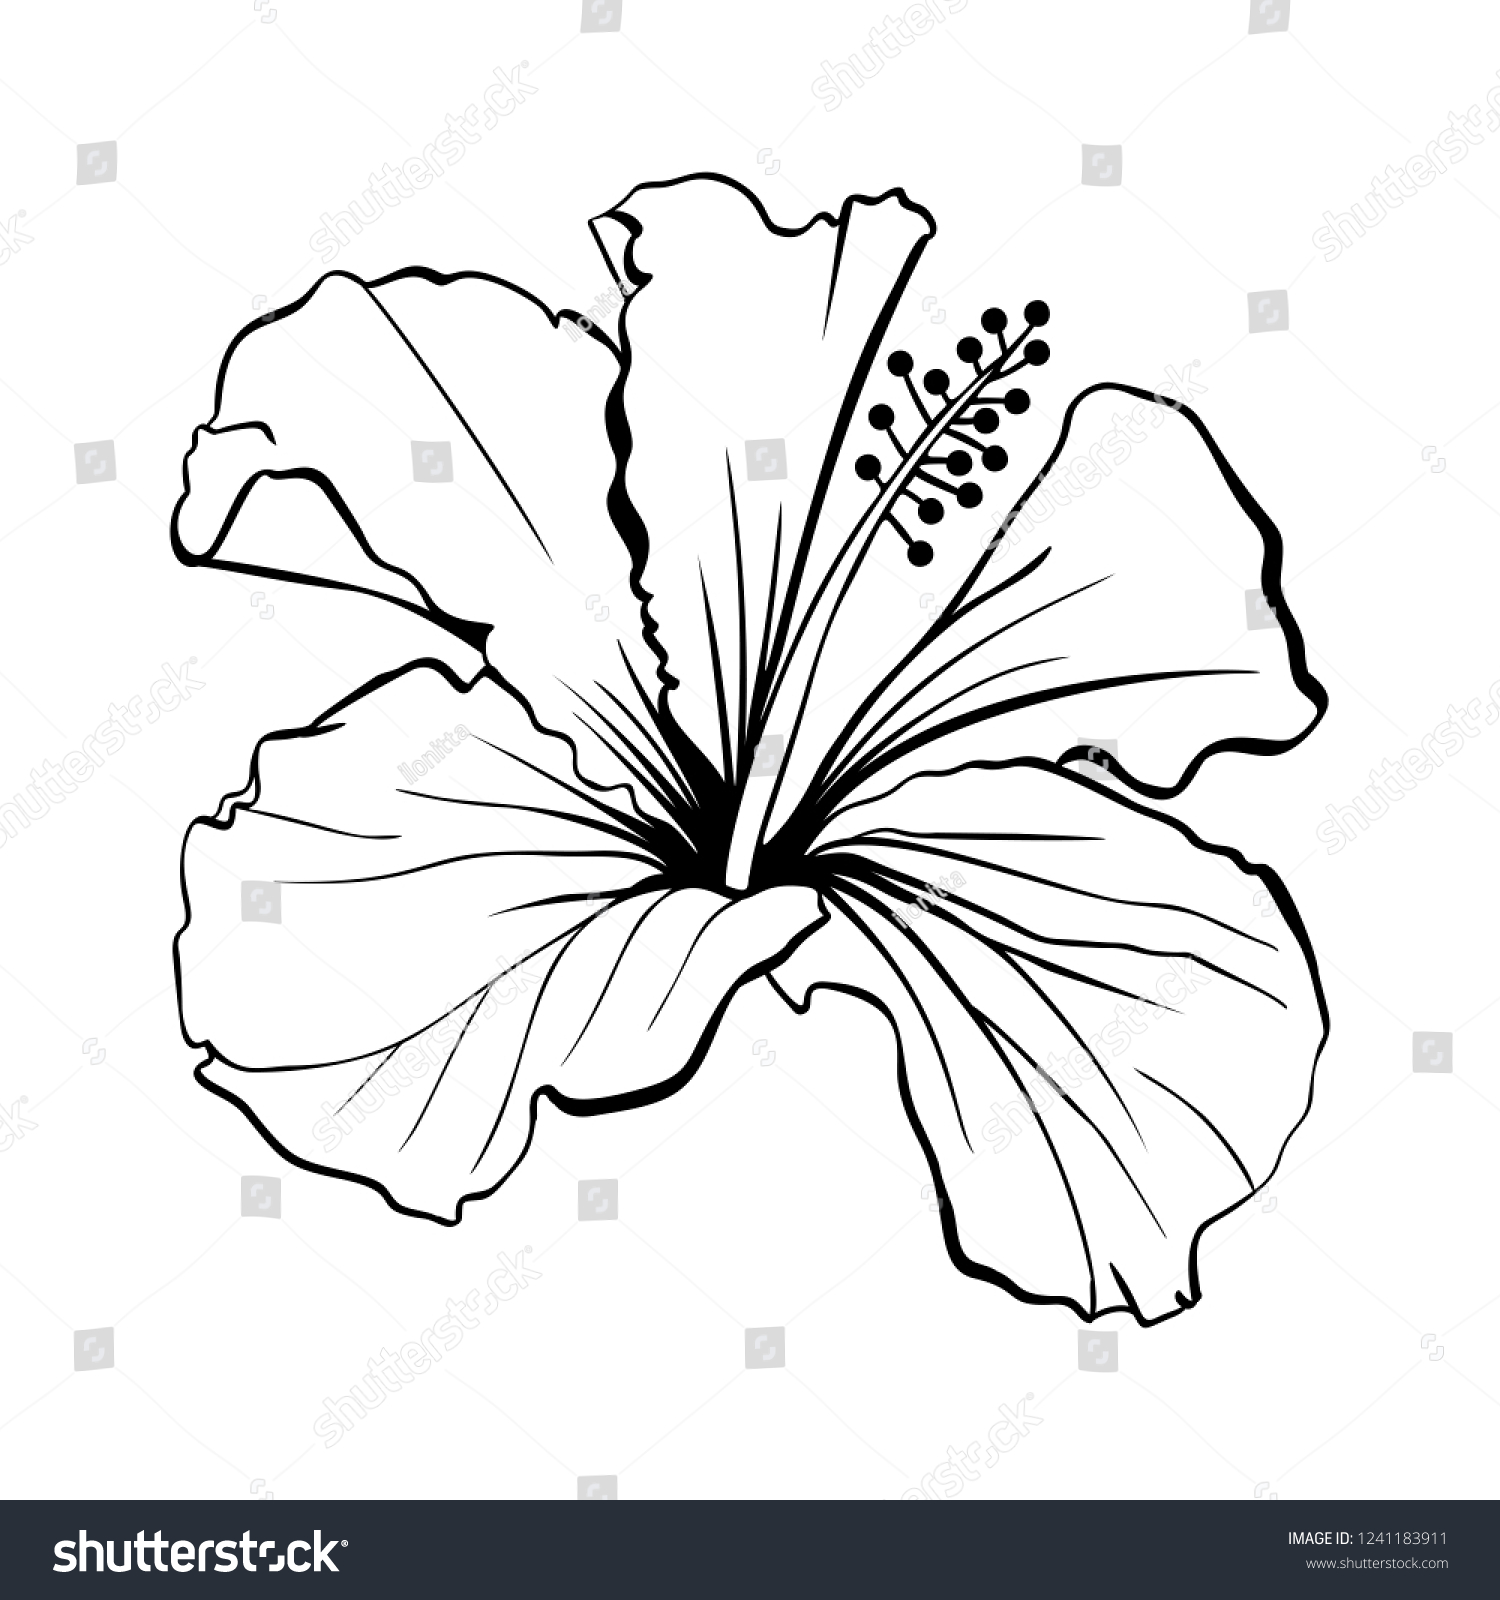 ハワイハイビスカスレーザーカットベクター画像 香りの輪郭の花 モロー シェニーズ ローズ 白黒 植物花びらを持つ植物 熱帯のカルカードまたはビサップハーブティー 深紅の花 のベクター画像素材 ロイヤリティフリー